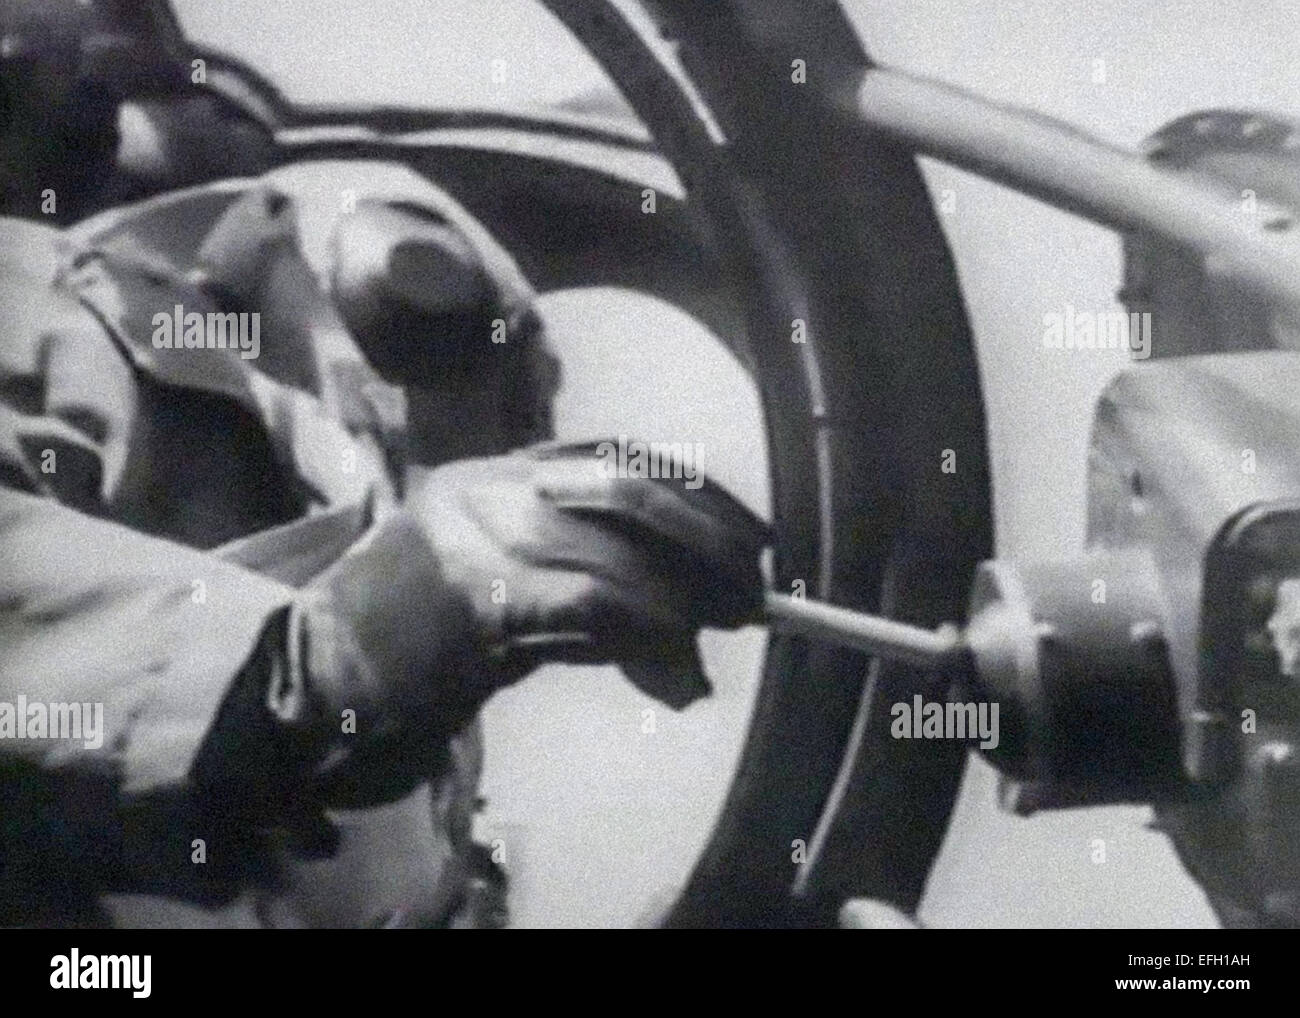 Eine Anleitung Bediener an Bord ein Heinkel er 177 Greif steuert eine Henschel Hs 293 Anti-Versand Luft Oberfläche Lenkflugkörper nach Fallenlassen aus dem Flugzeug während der Tests im Dezember 1940. Die Rakete angetrieben von einem Walter HWK 109-507-Raketenmotor remote per Funk wurde, so dass der Fahrer die Rakete Kurswechsel mit einem Joystick gesteuert. Stockfoto